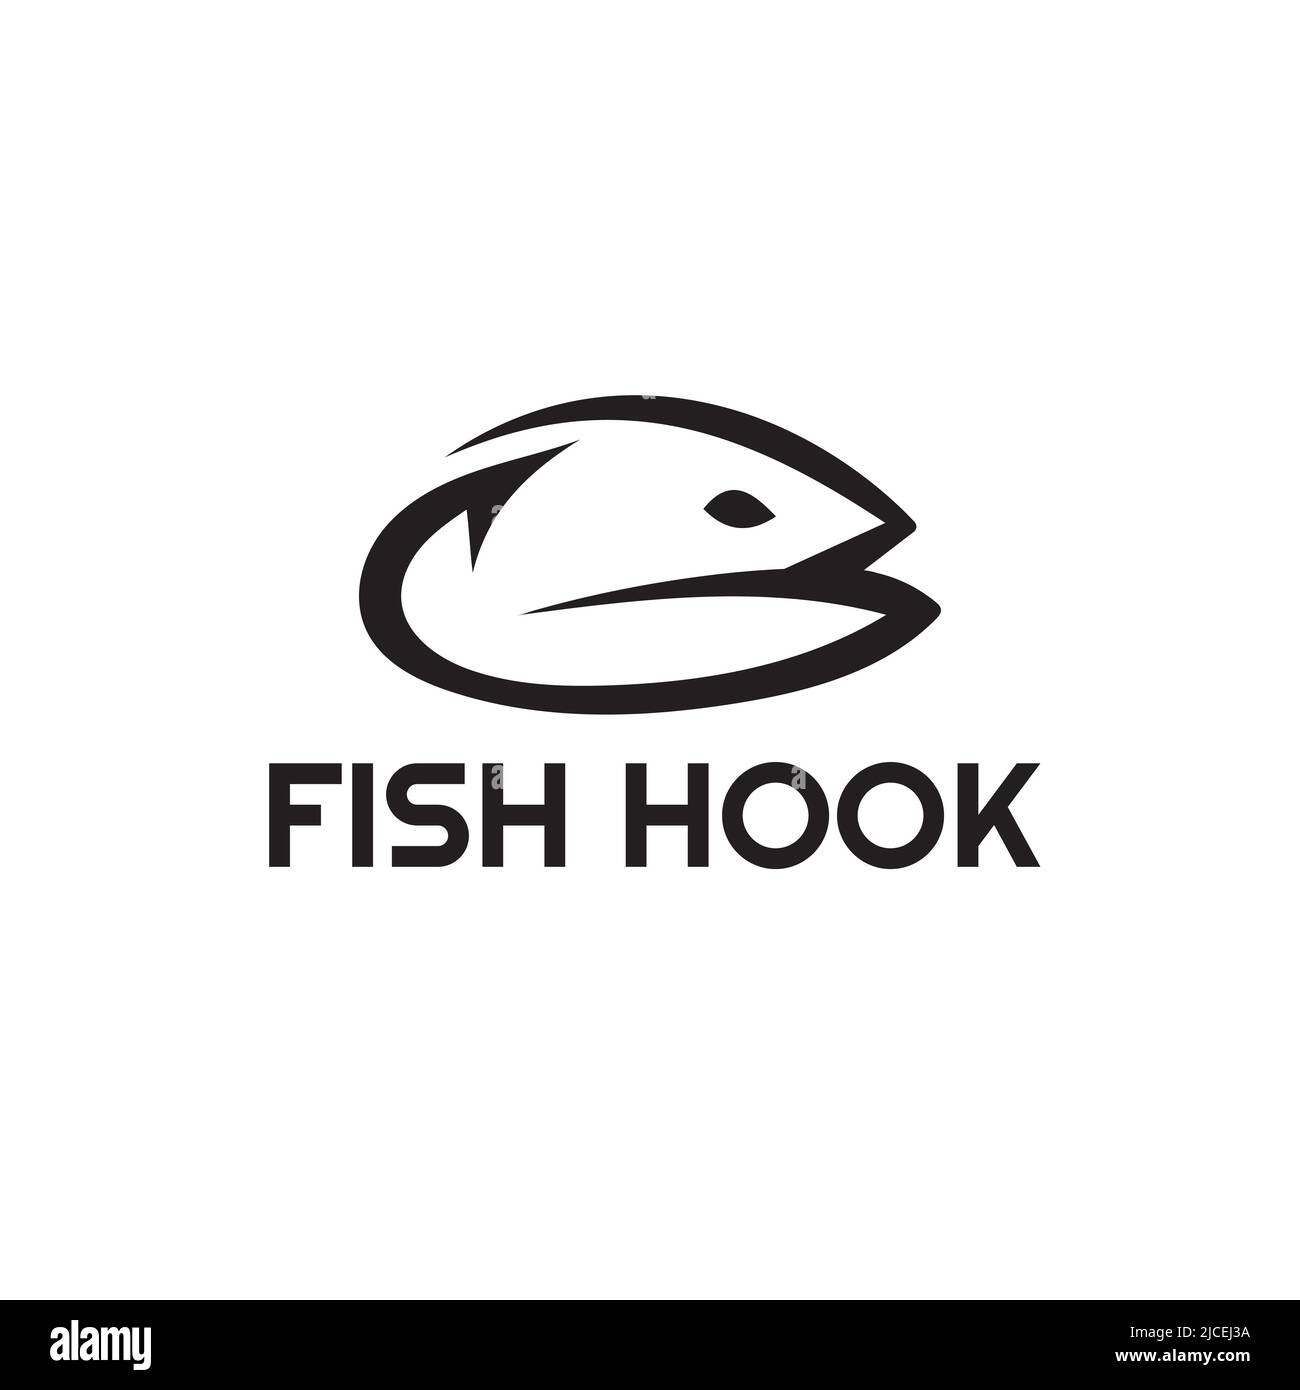 Illustrazione vettoriale del logo della testa di pesce del gancio di pesca semplice disegno astratto, può essere utilizzato per il logo della società di approvvigionamento di pesce Illustrazione Vettoriale